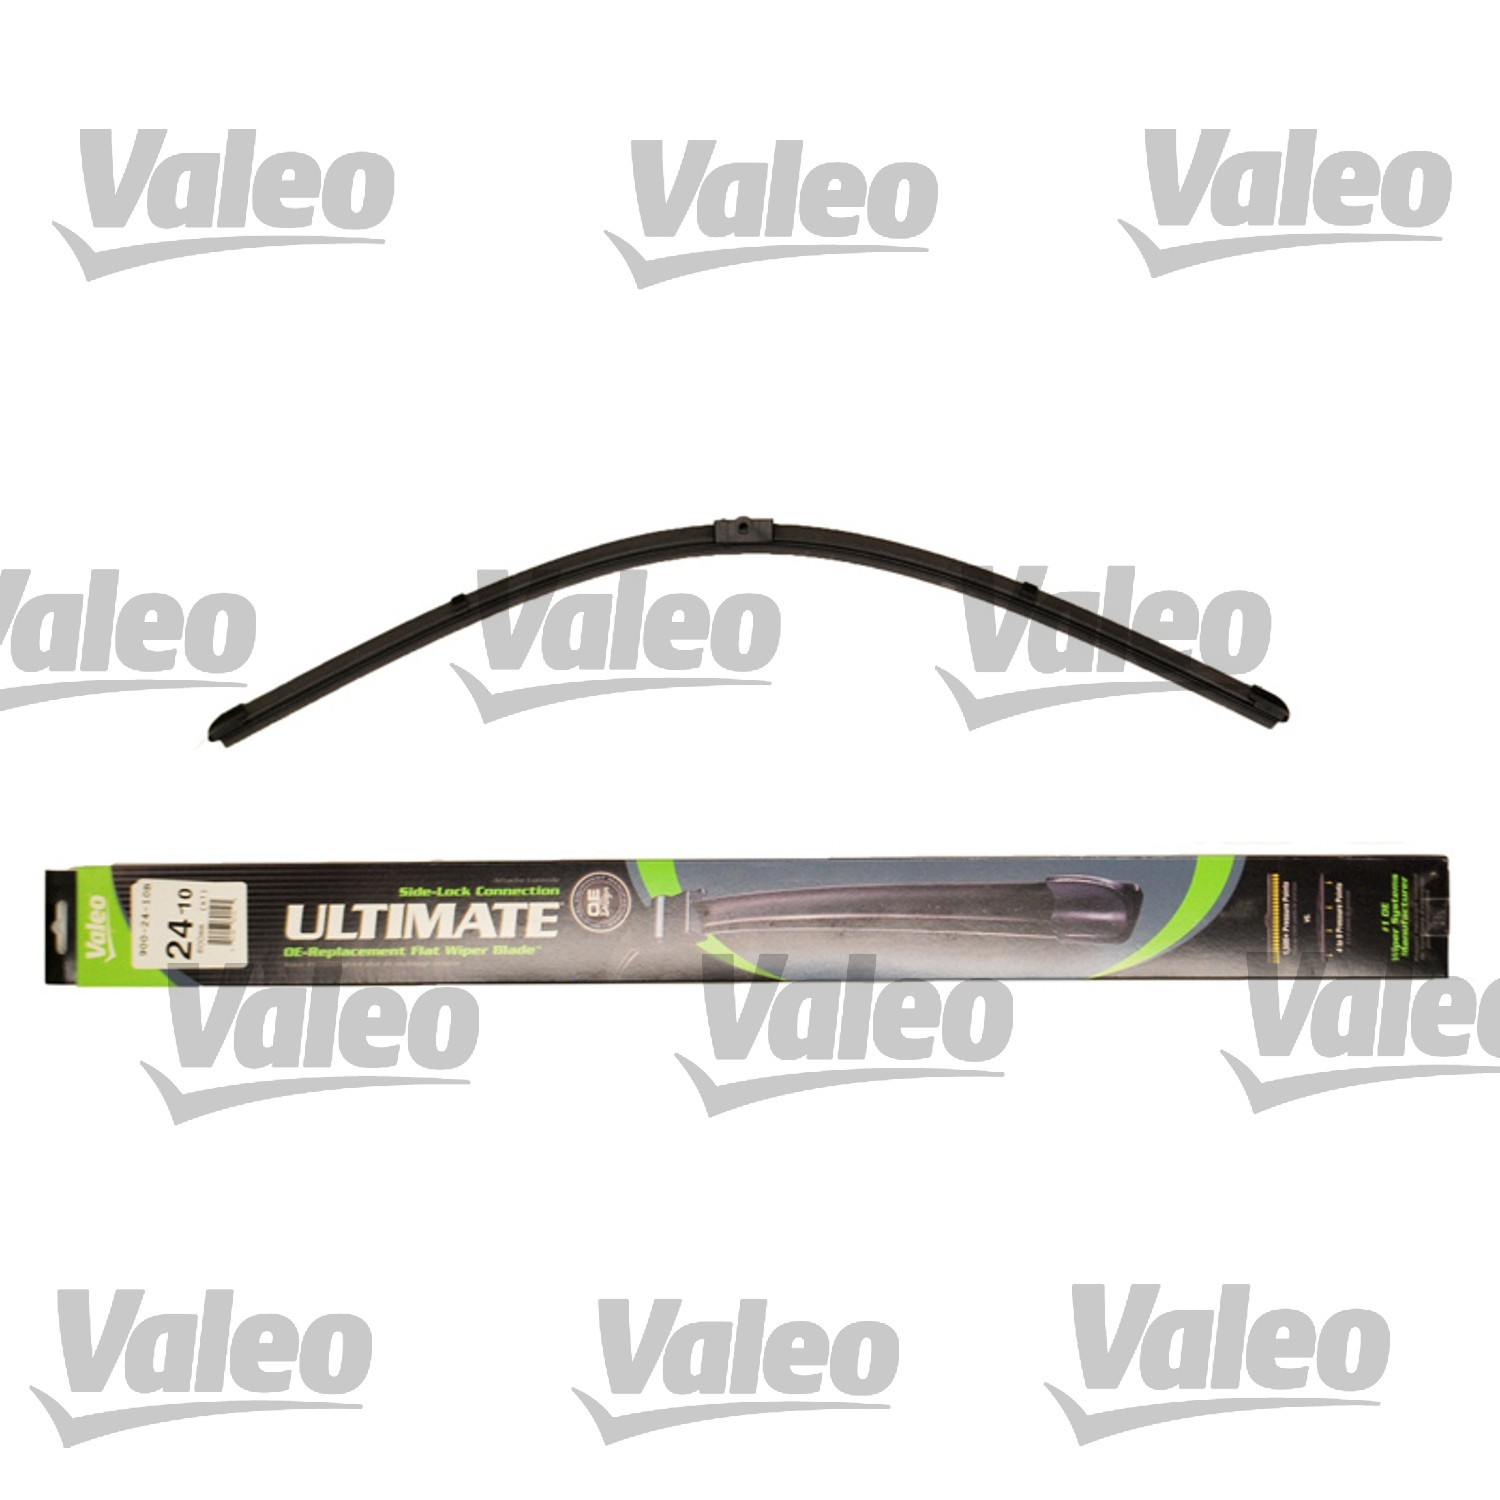 VALEO - Ultimate Wiper Blade Refill - VEO 900-24-10B